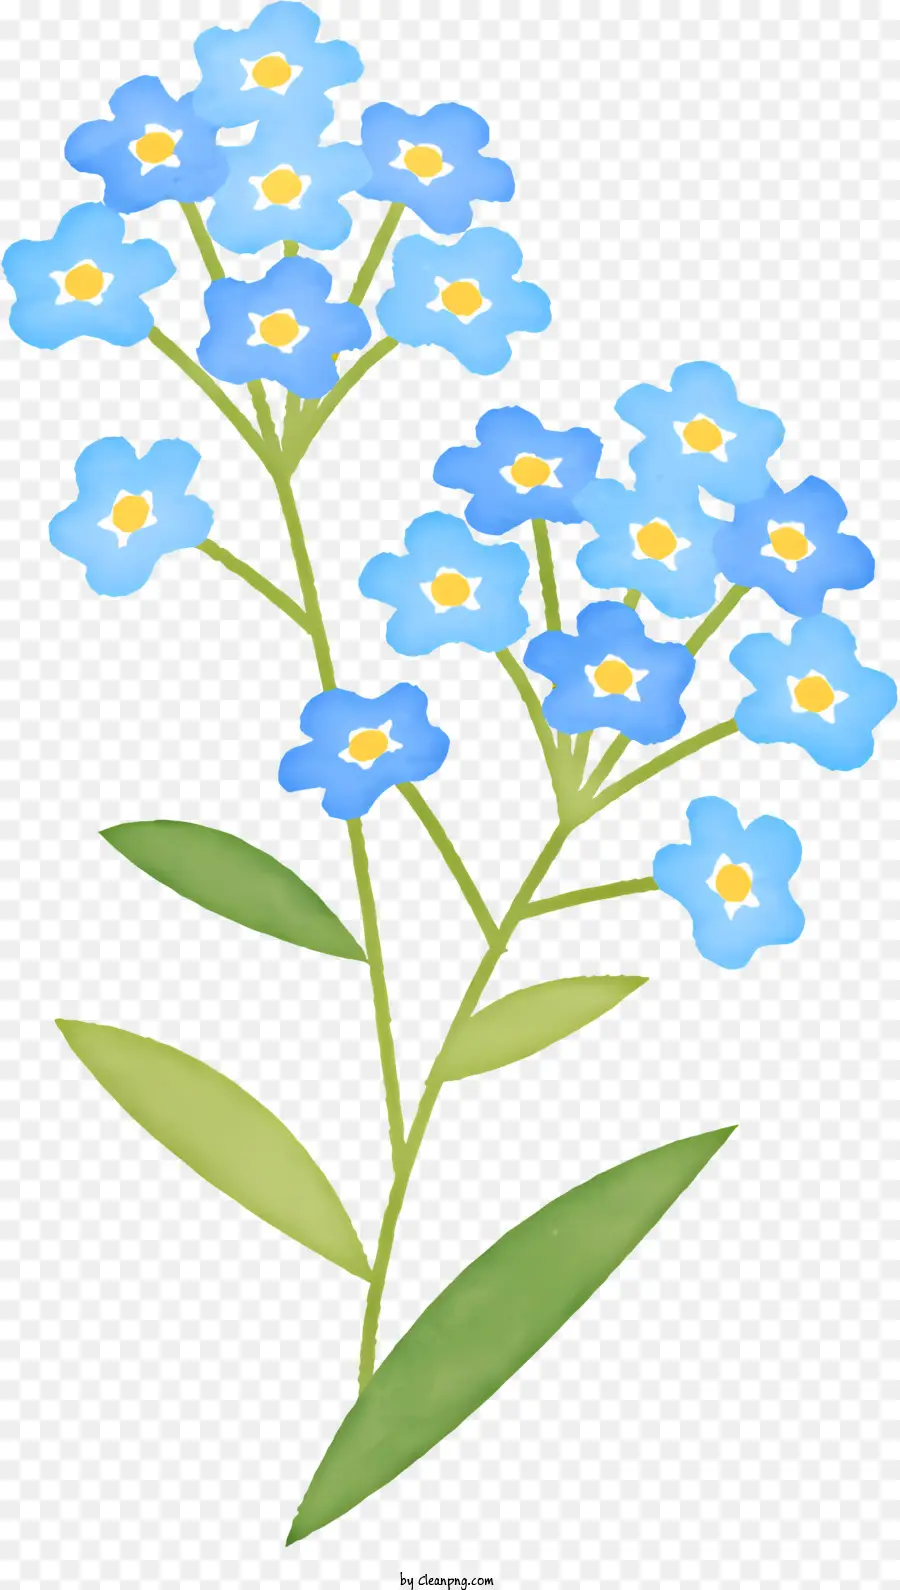 hoa cánh hoa trắng cánh hoa màu xanh lá cây xanh - Hoa trắng và màu xanh không có thân cây